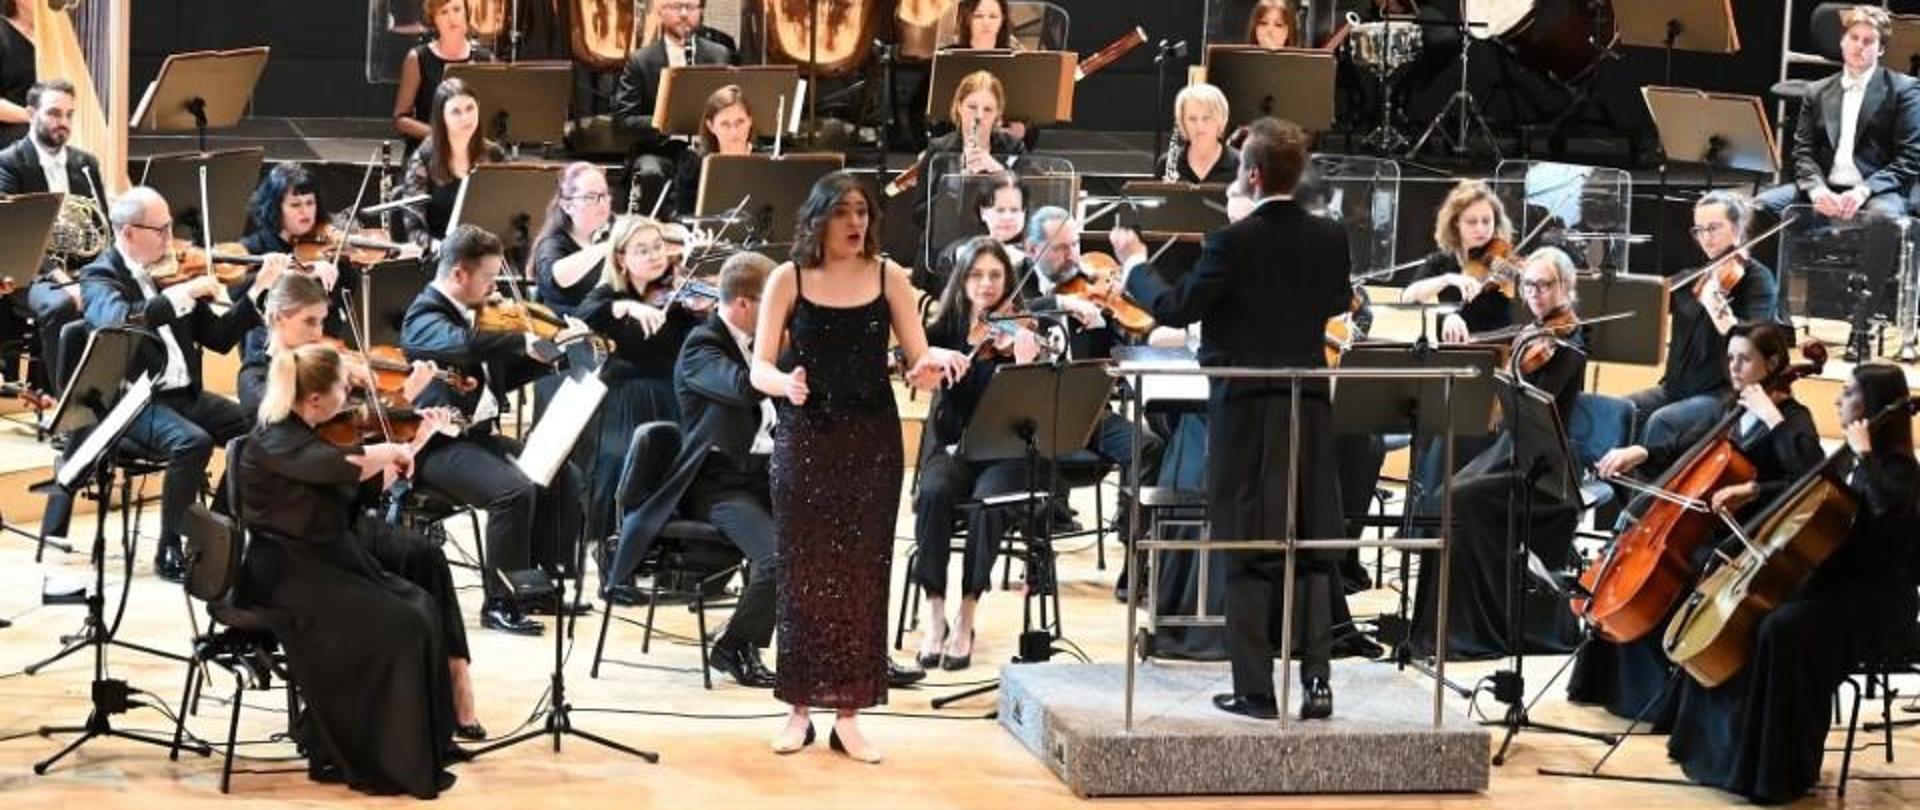 Zdjęcie kolorowe, wokalistka na scenie filharmonii w stroju wieczorowym w otoczeniu orkiestry symfonicznej.